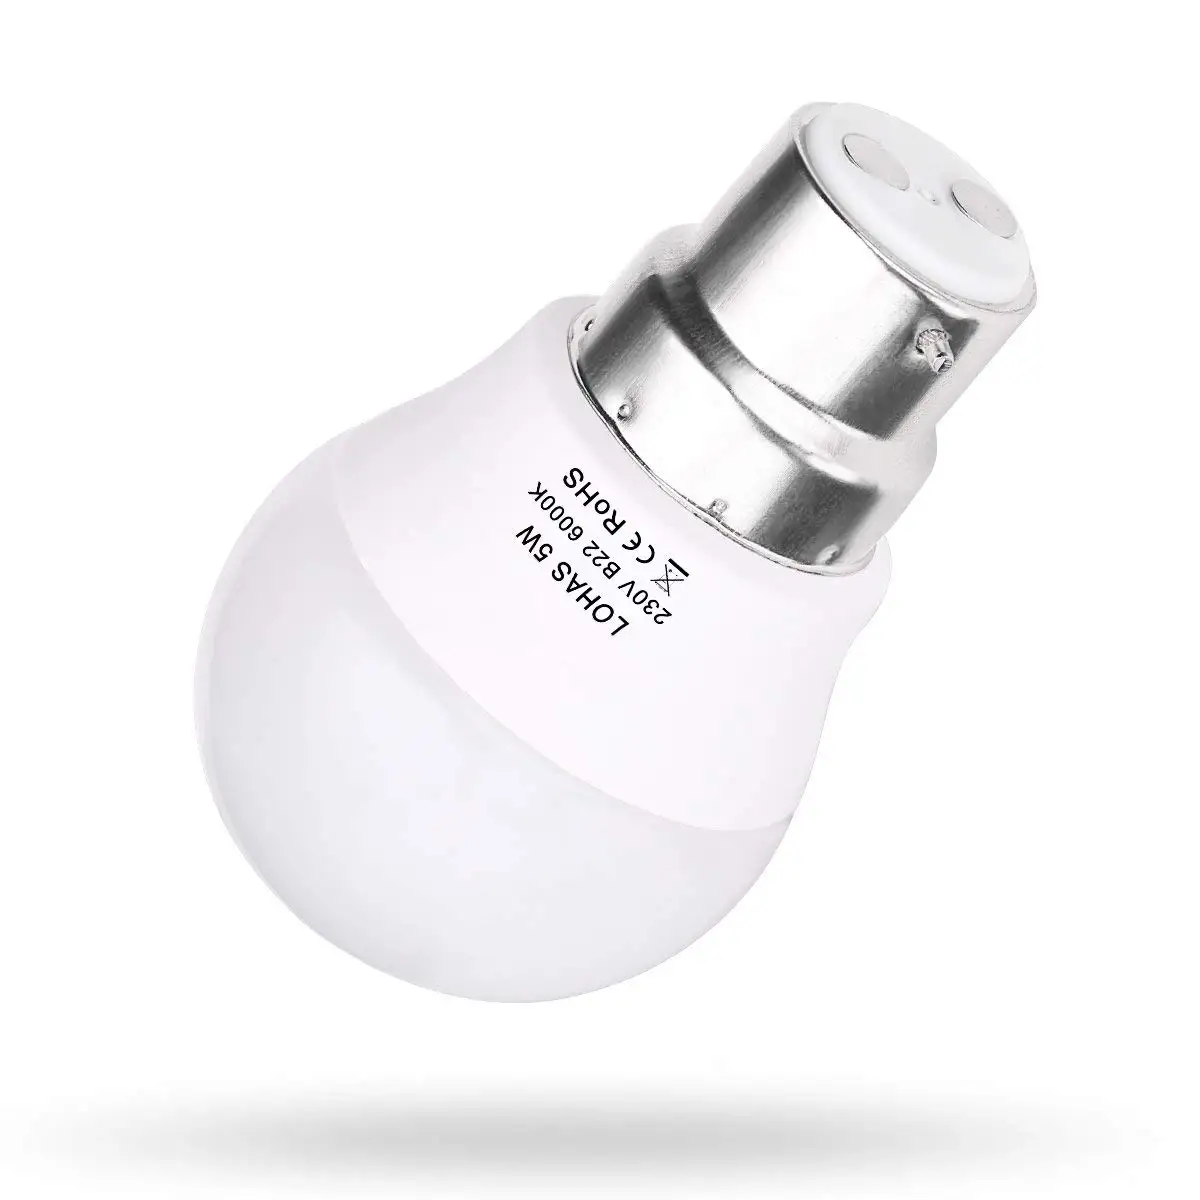 Светодиодный светильник 5 Вт G45 дневной белый 6000K 400lm B22 байонетная Базовая лампа 35 Вт лампа накаливания эквивалент, [Класс энергопотребления A+] 10 Упаковка